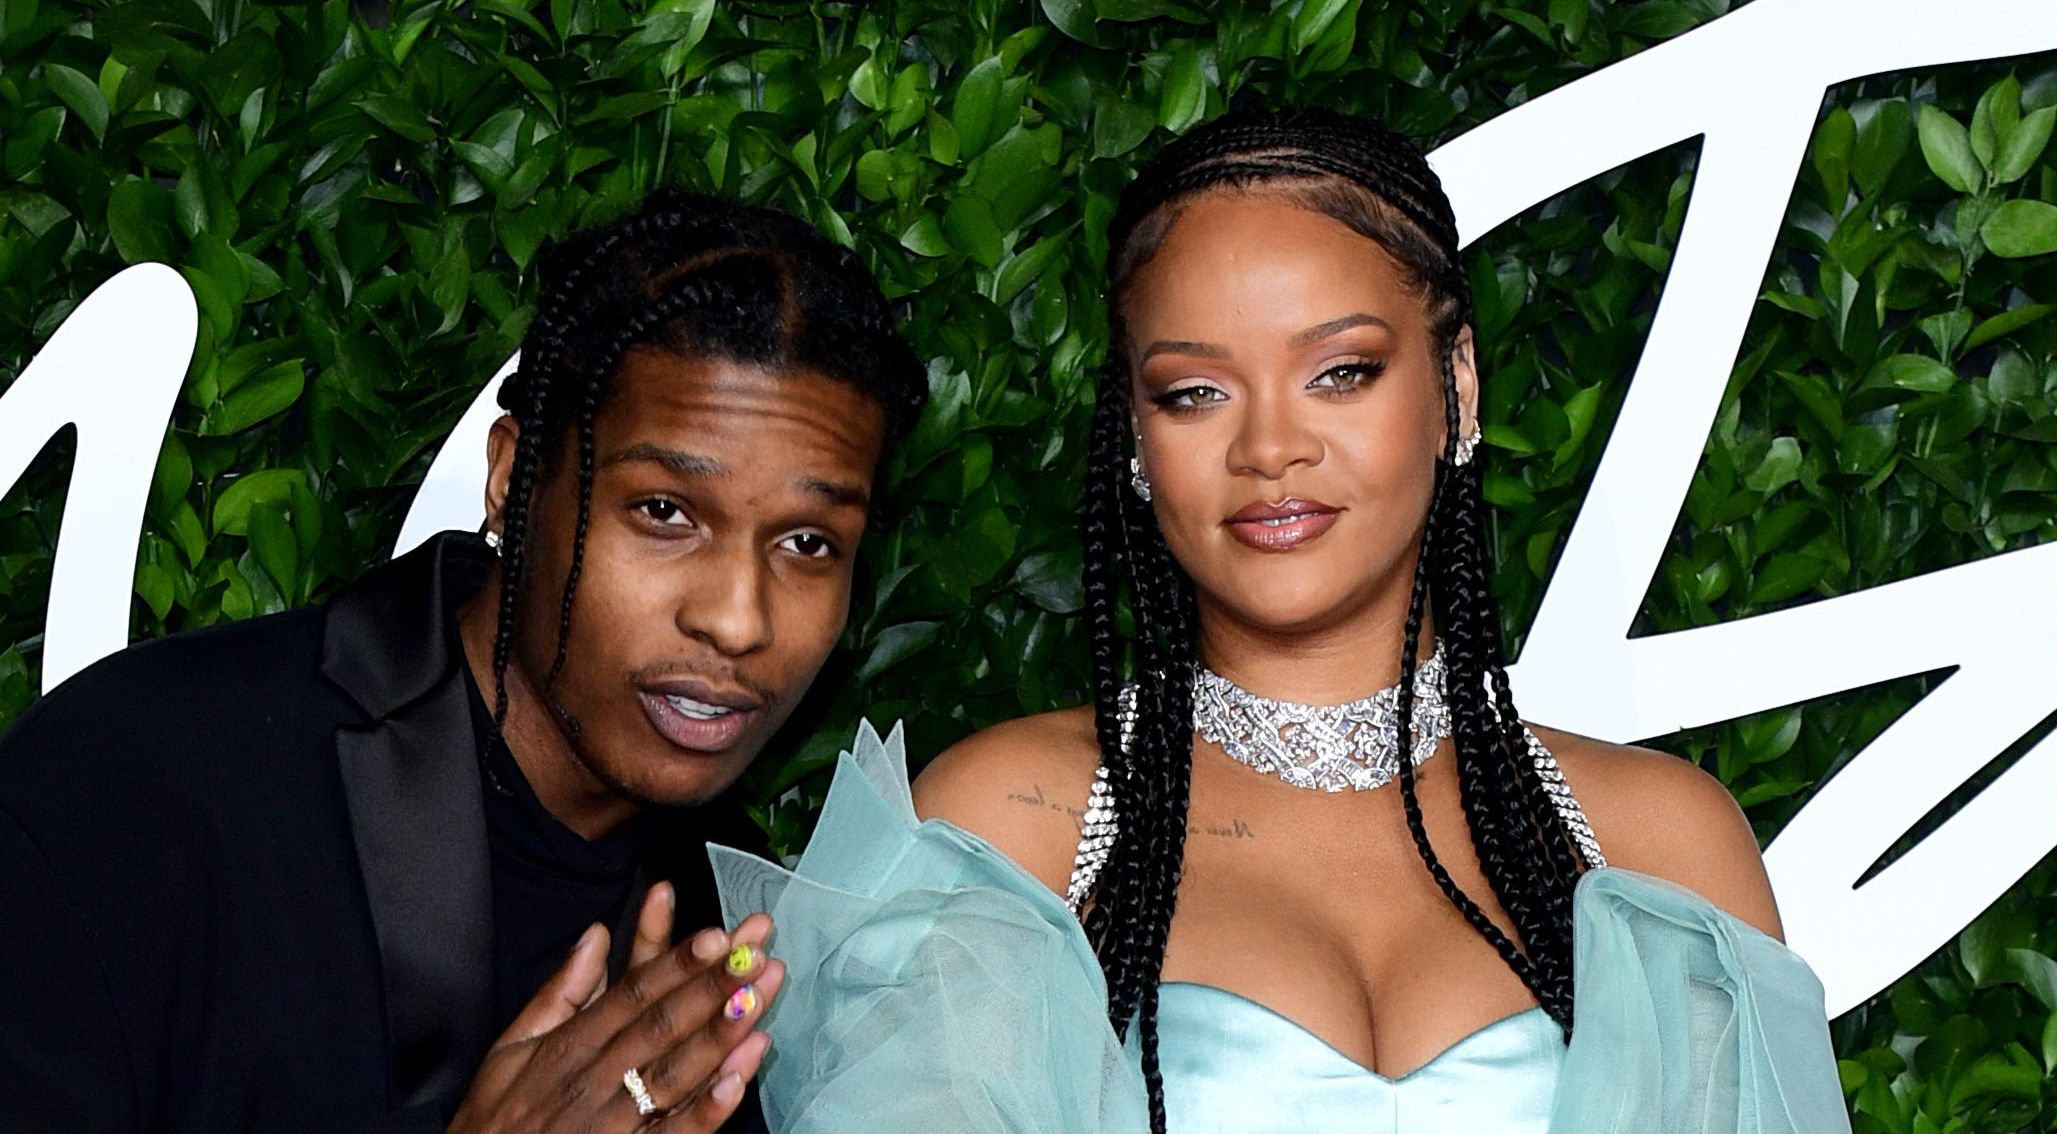 Rihanna, A$AP Rocky enjoy beach date with son ahead of reveal